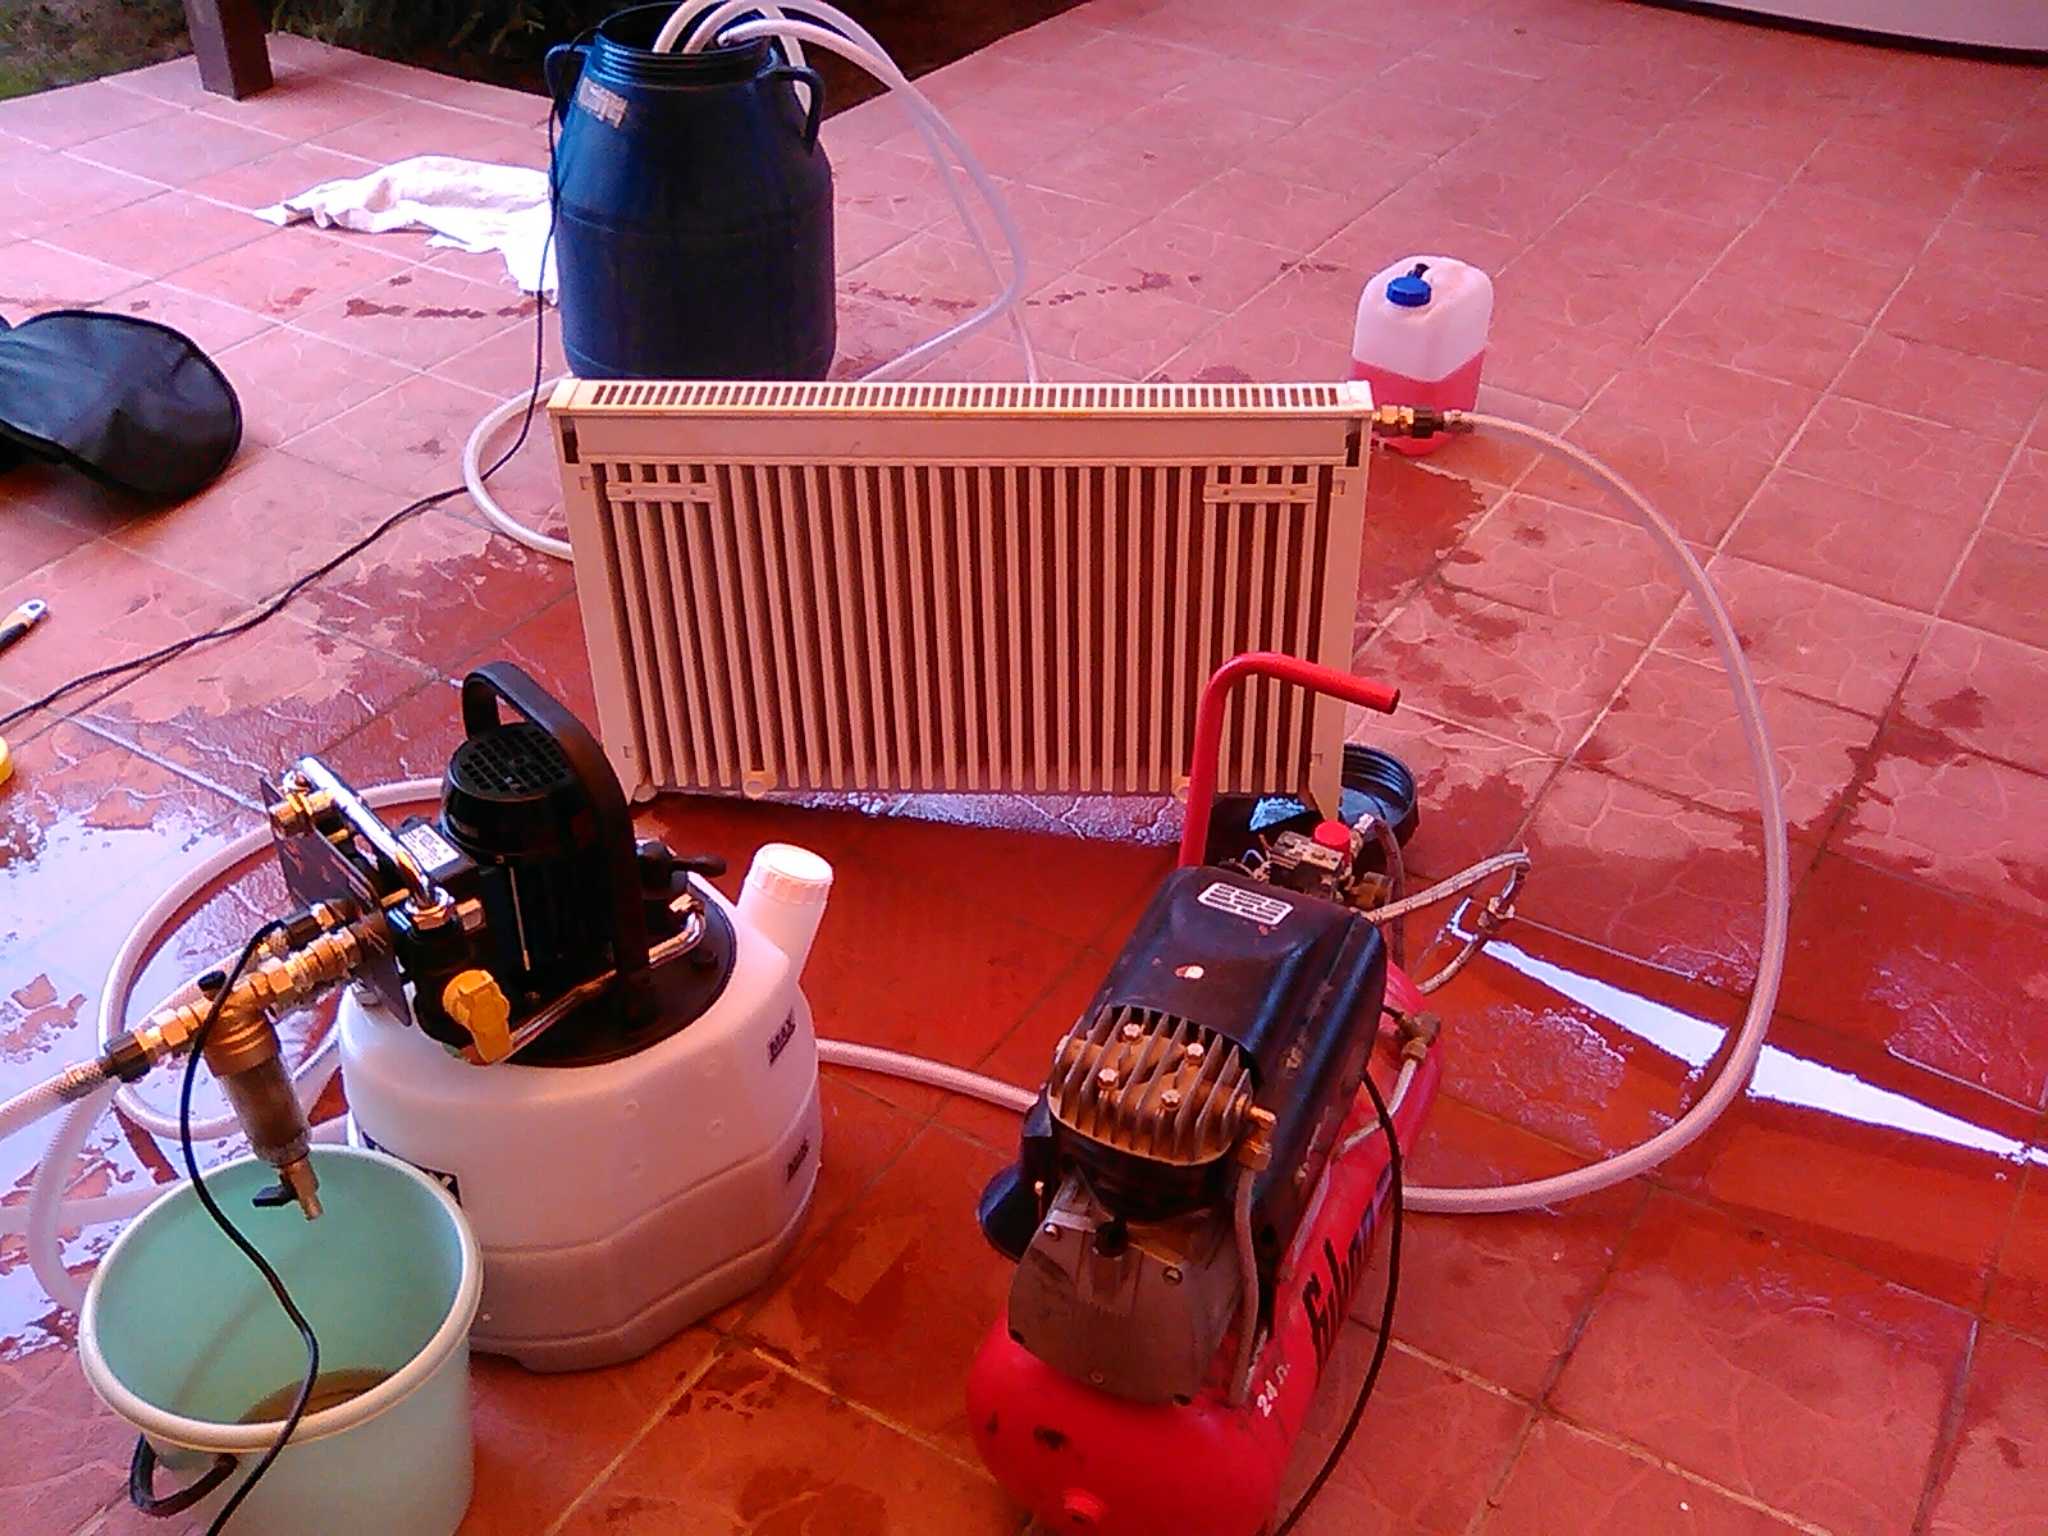 Промывка системы отопления в многоквартирном доме и в коттедже: только проверенные способы